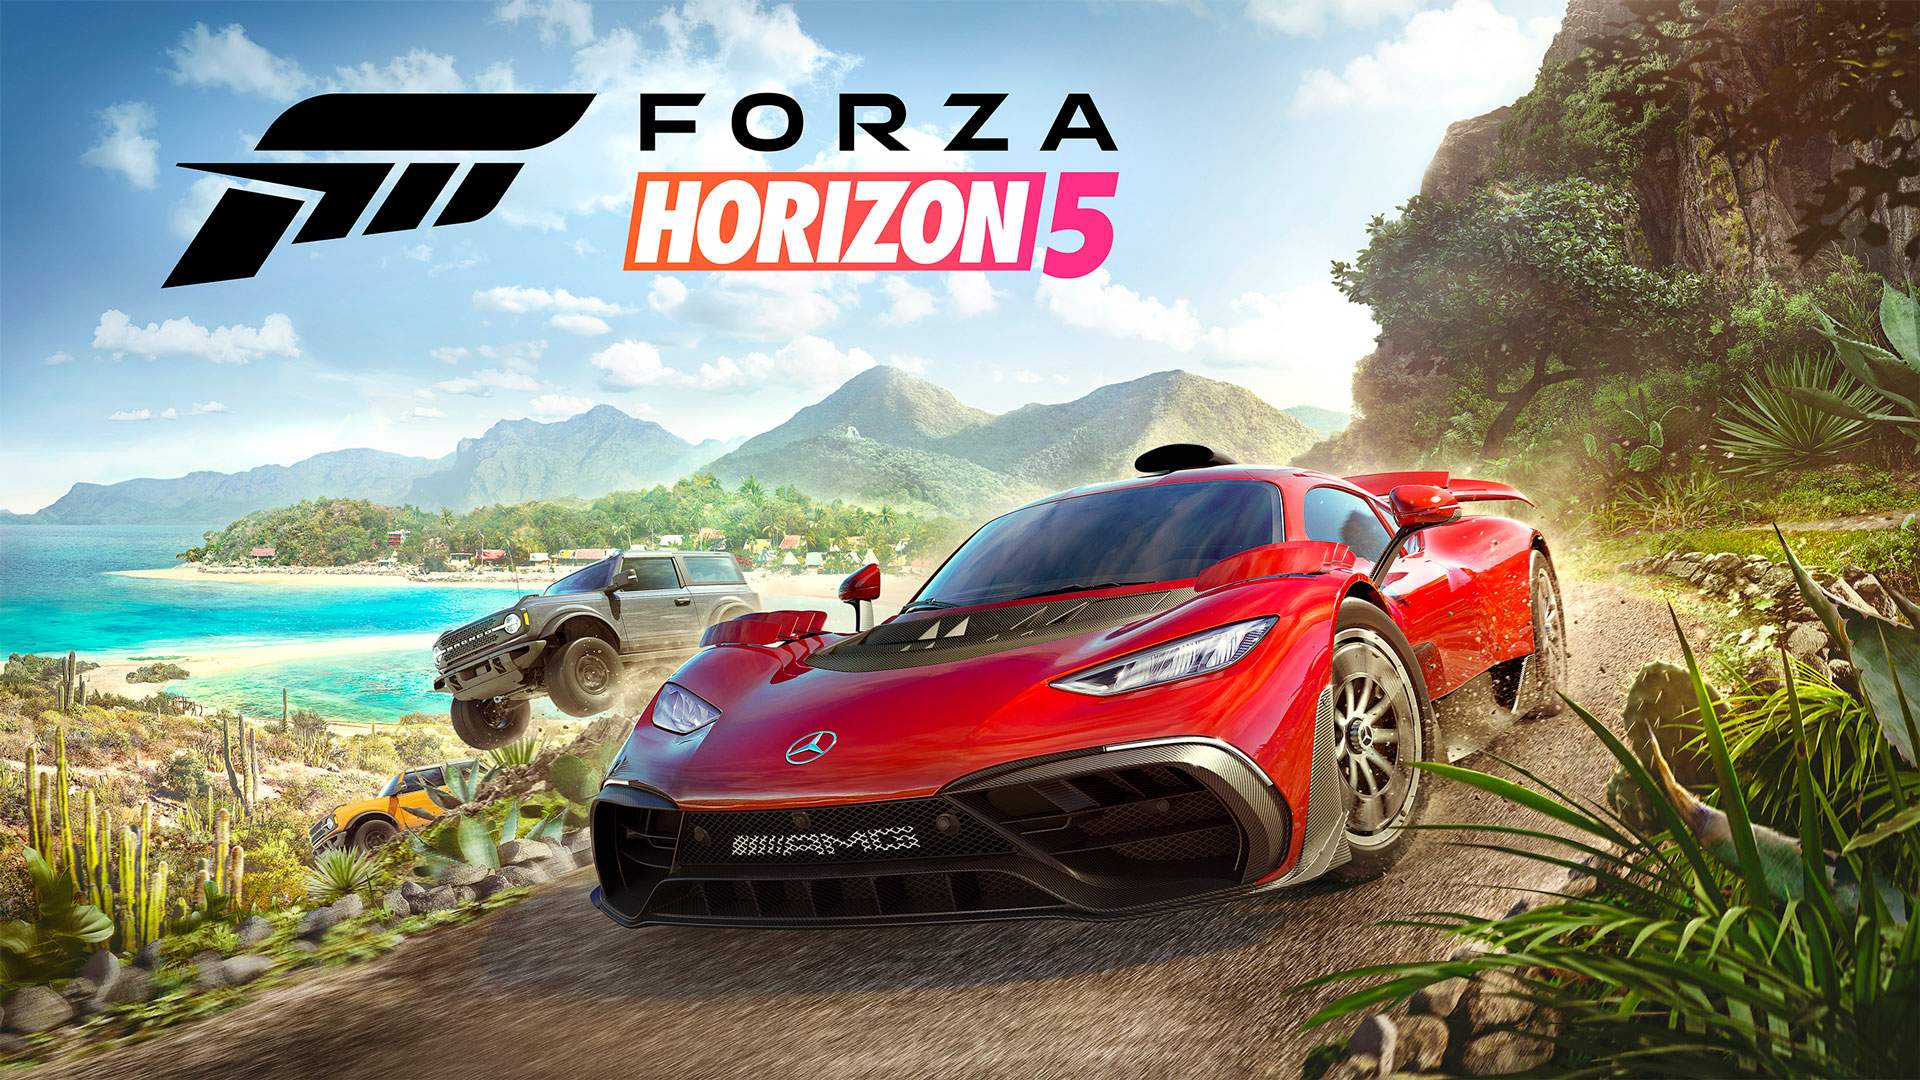 Mädchen hat Forza Horizon 5 vor der Veröffentlichung gehackt - Spiel bereits auf Torrents